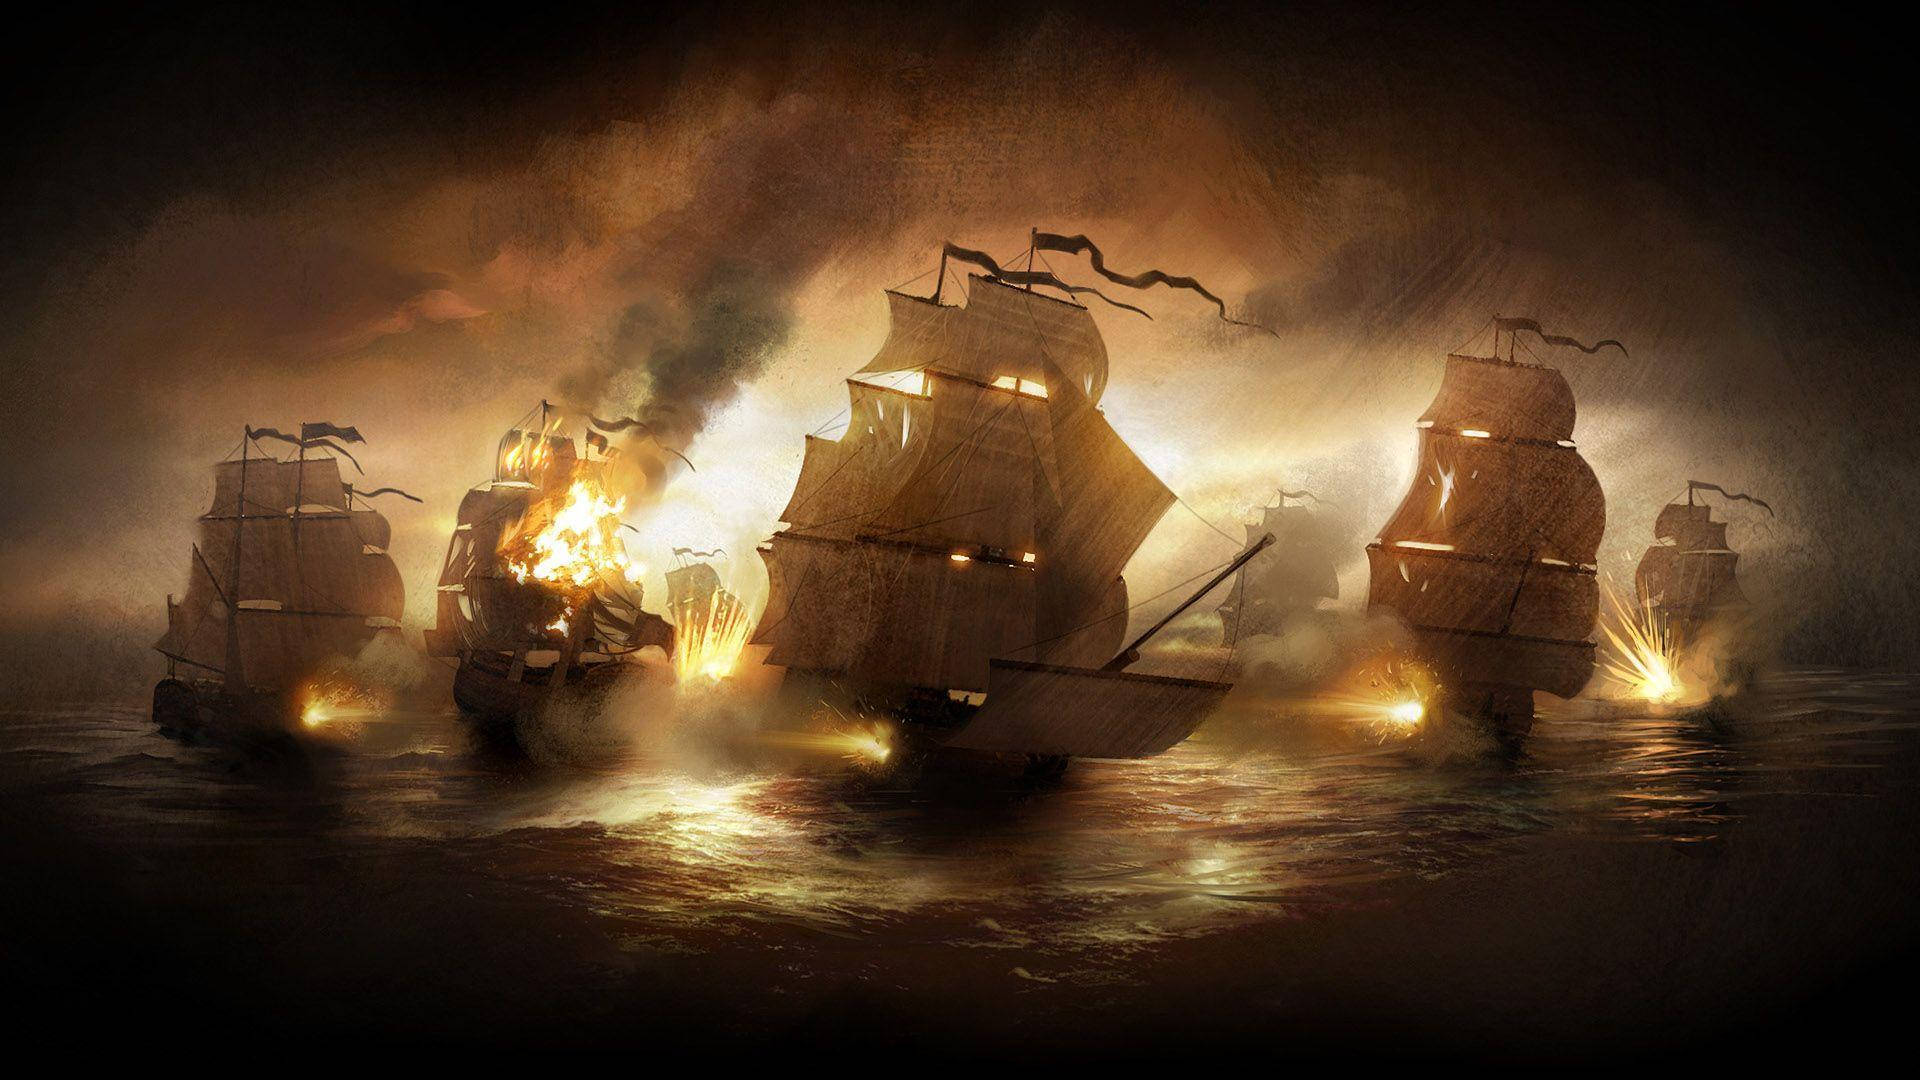 Ambushed Pirate Ships Background